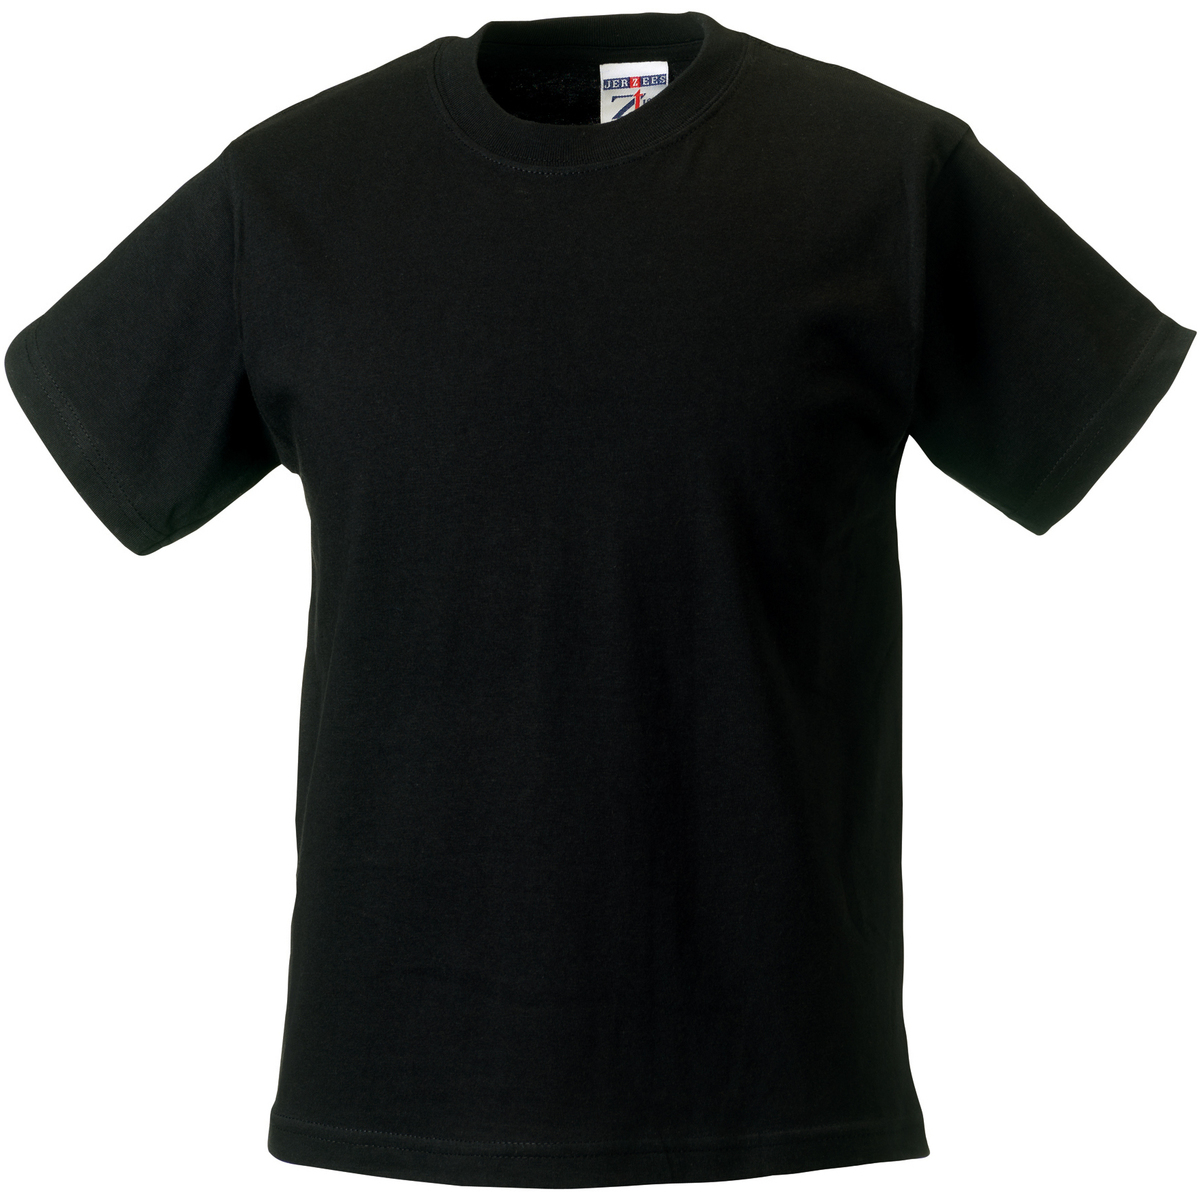 Vêtements Enfant T-shirts manches courtes Jerzees Schoolgear ZT180B Noir